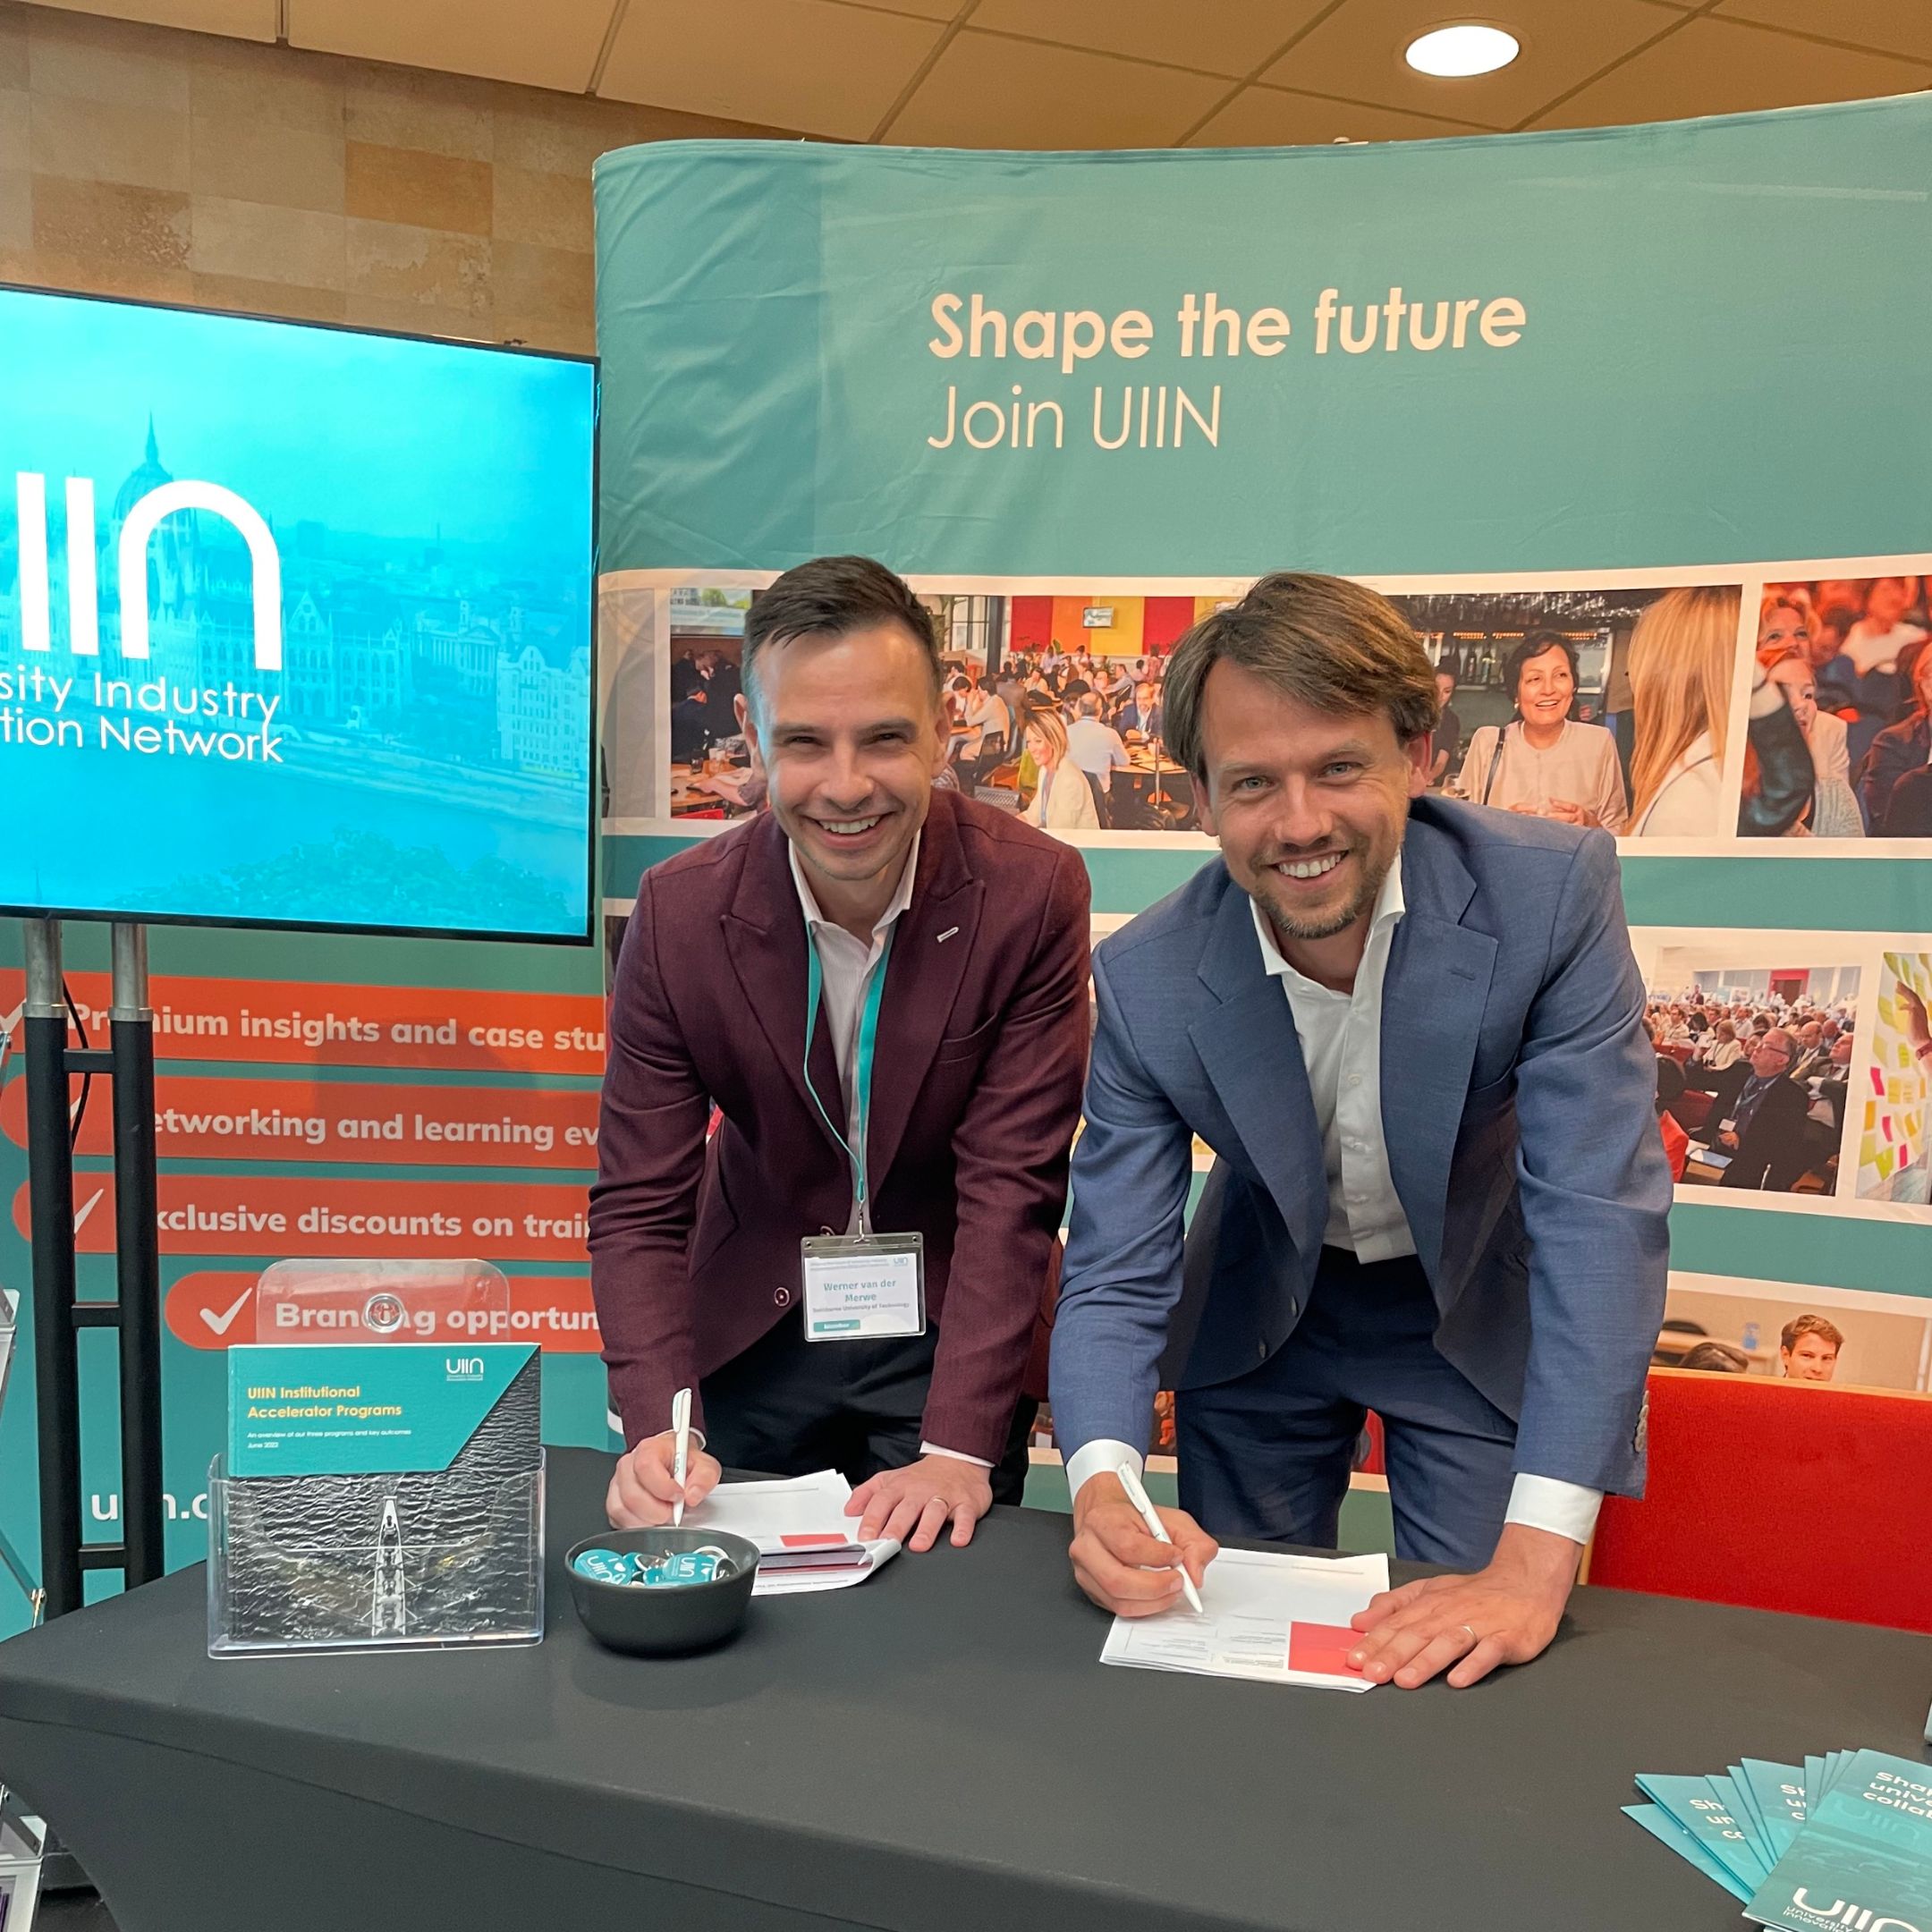 斯文本科技大学和UIIN代表微笑并签署一张纸。